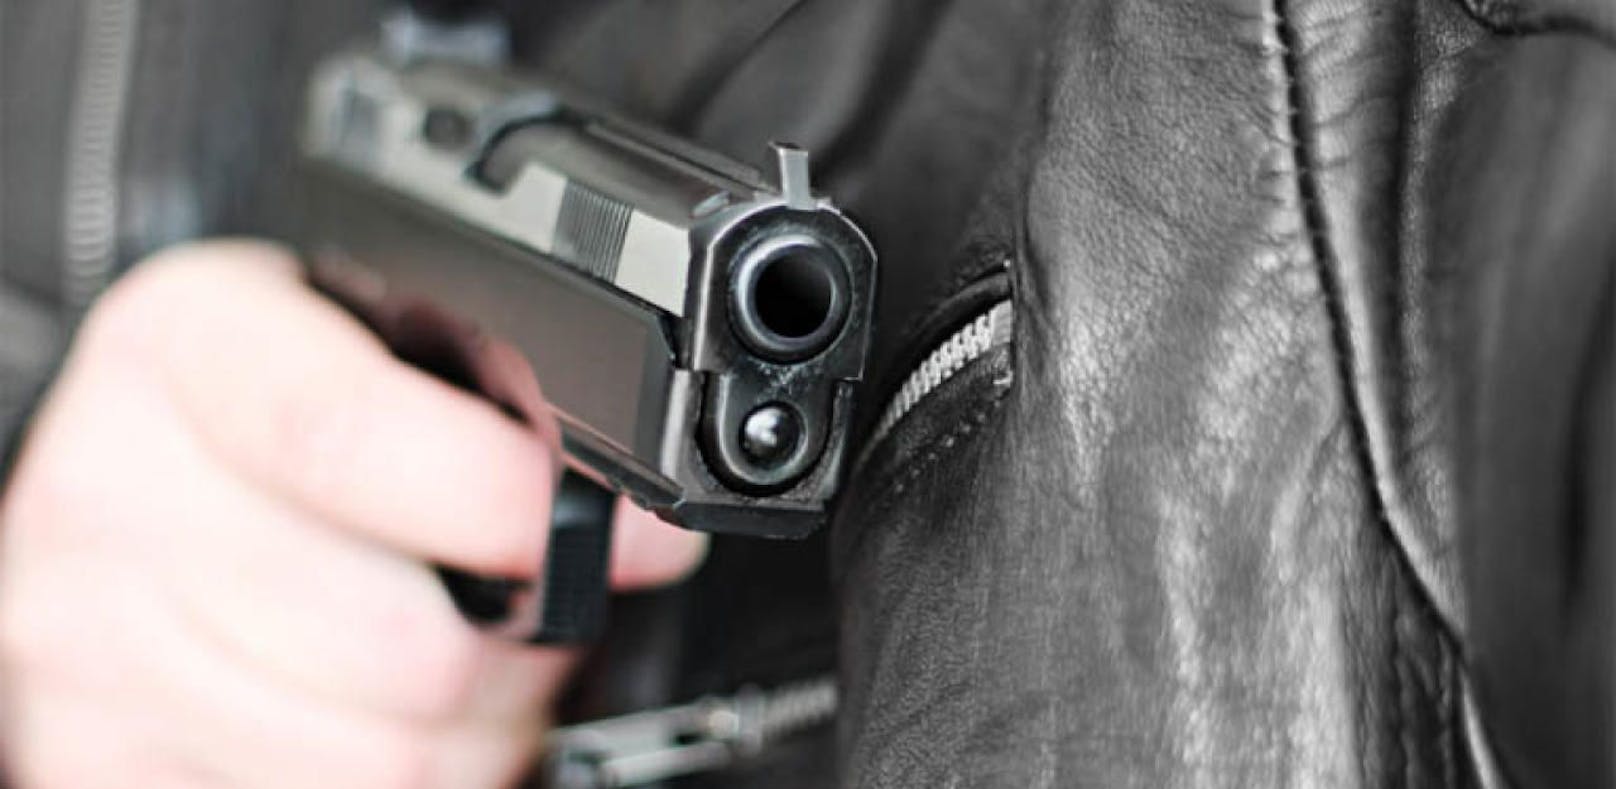 23-Jähriger bedrohte Arbeiter mit Gaspistole